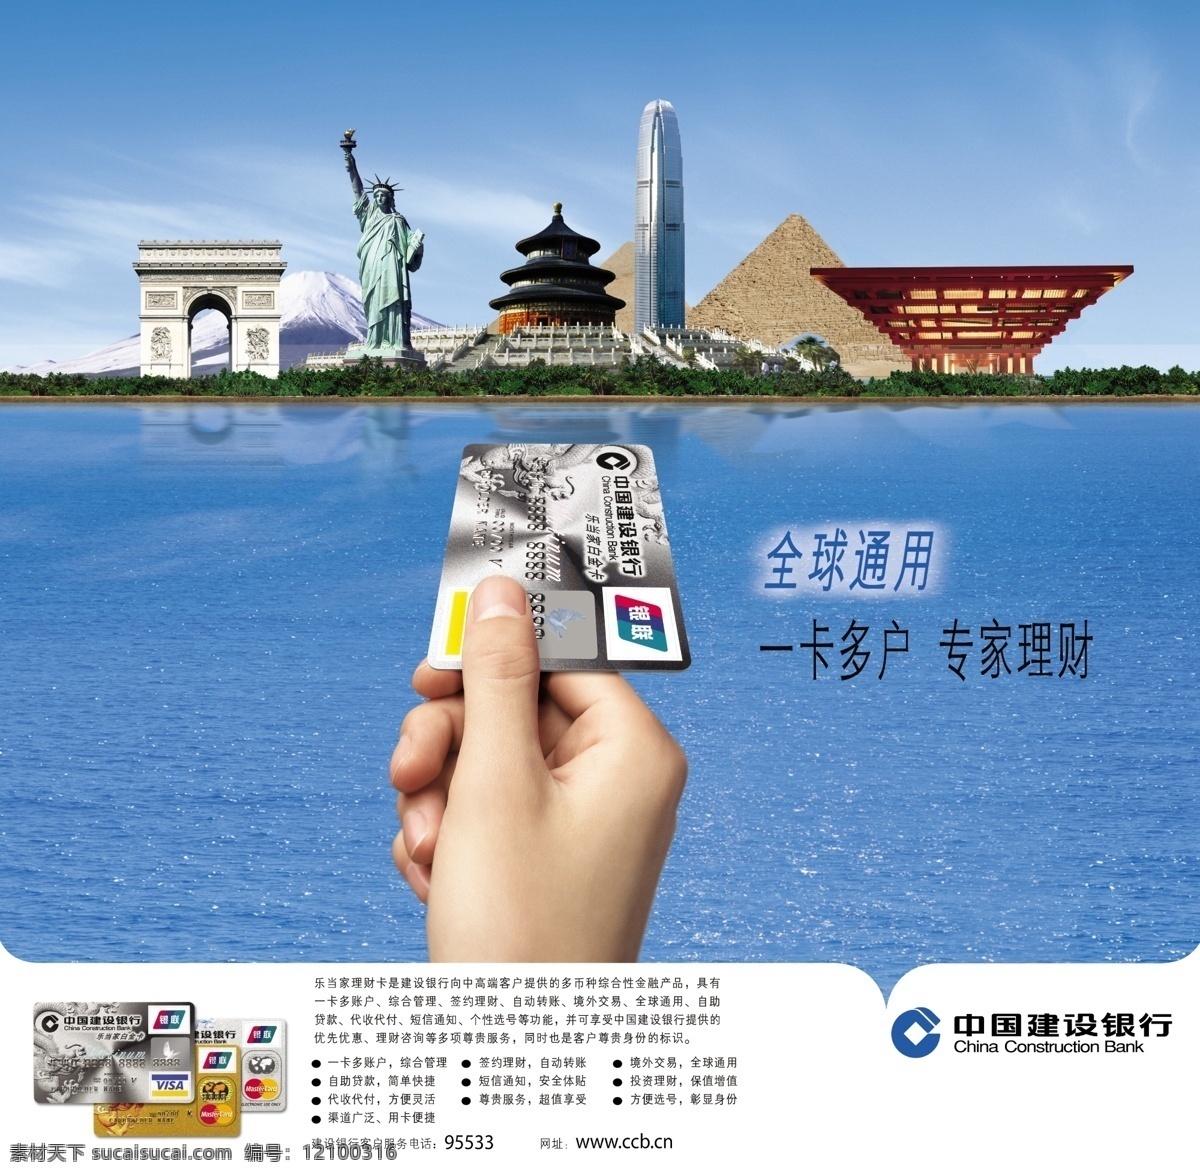 中国建设银行 海报 标志 故宫 城市风光 建筑 建行 建设银行 金字塔 海洋 富士山 广告设计模板 源文件